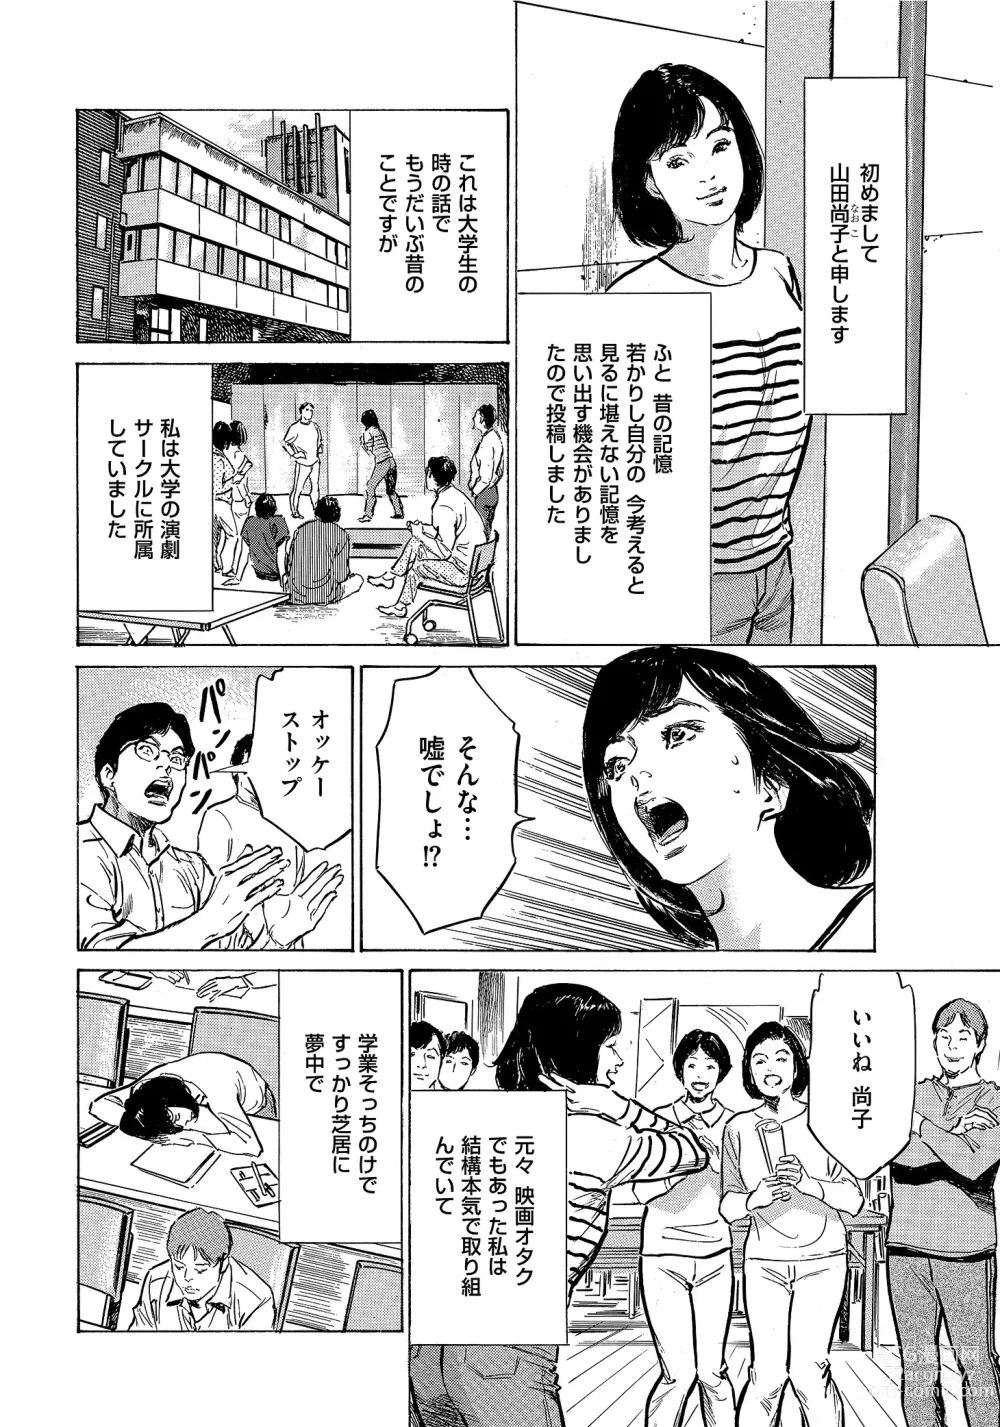 Page 243 of manga Saikou ni Toroketa Honki de Honto no Hanashi 16 episodes